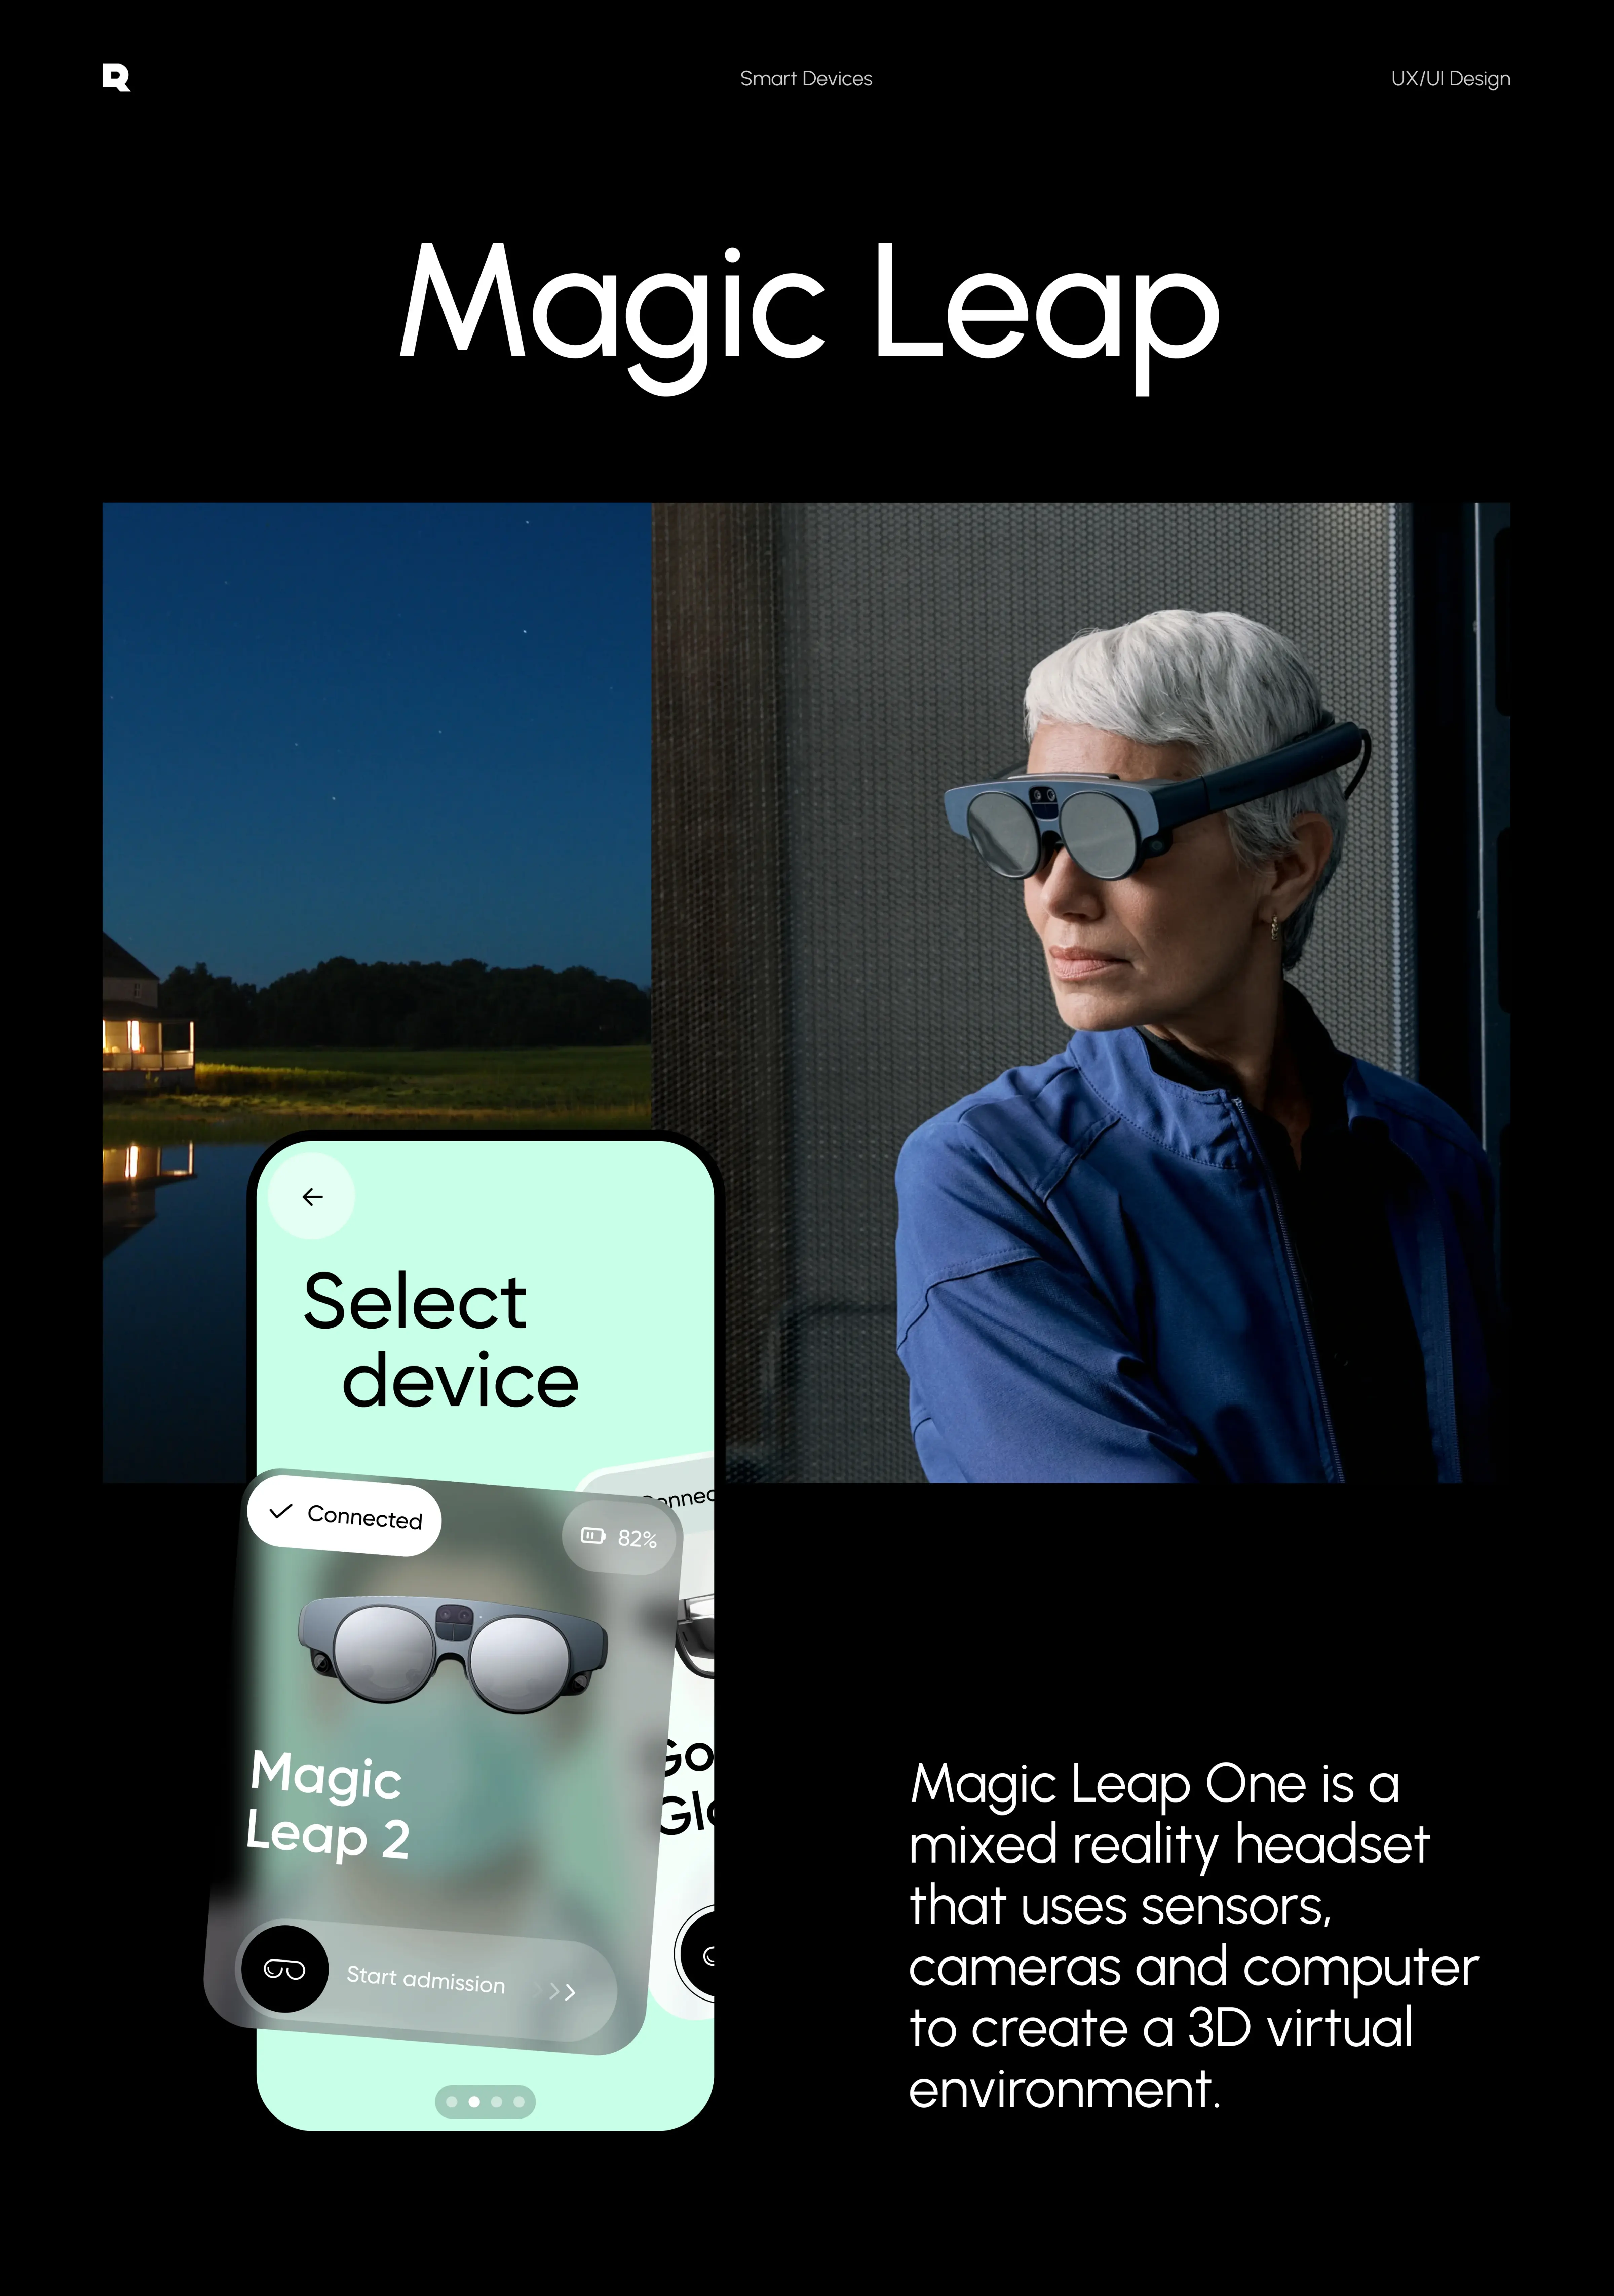 Magic Leap - Enterprise AR device